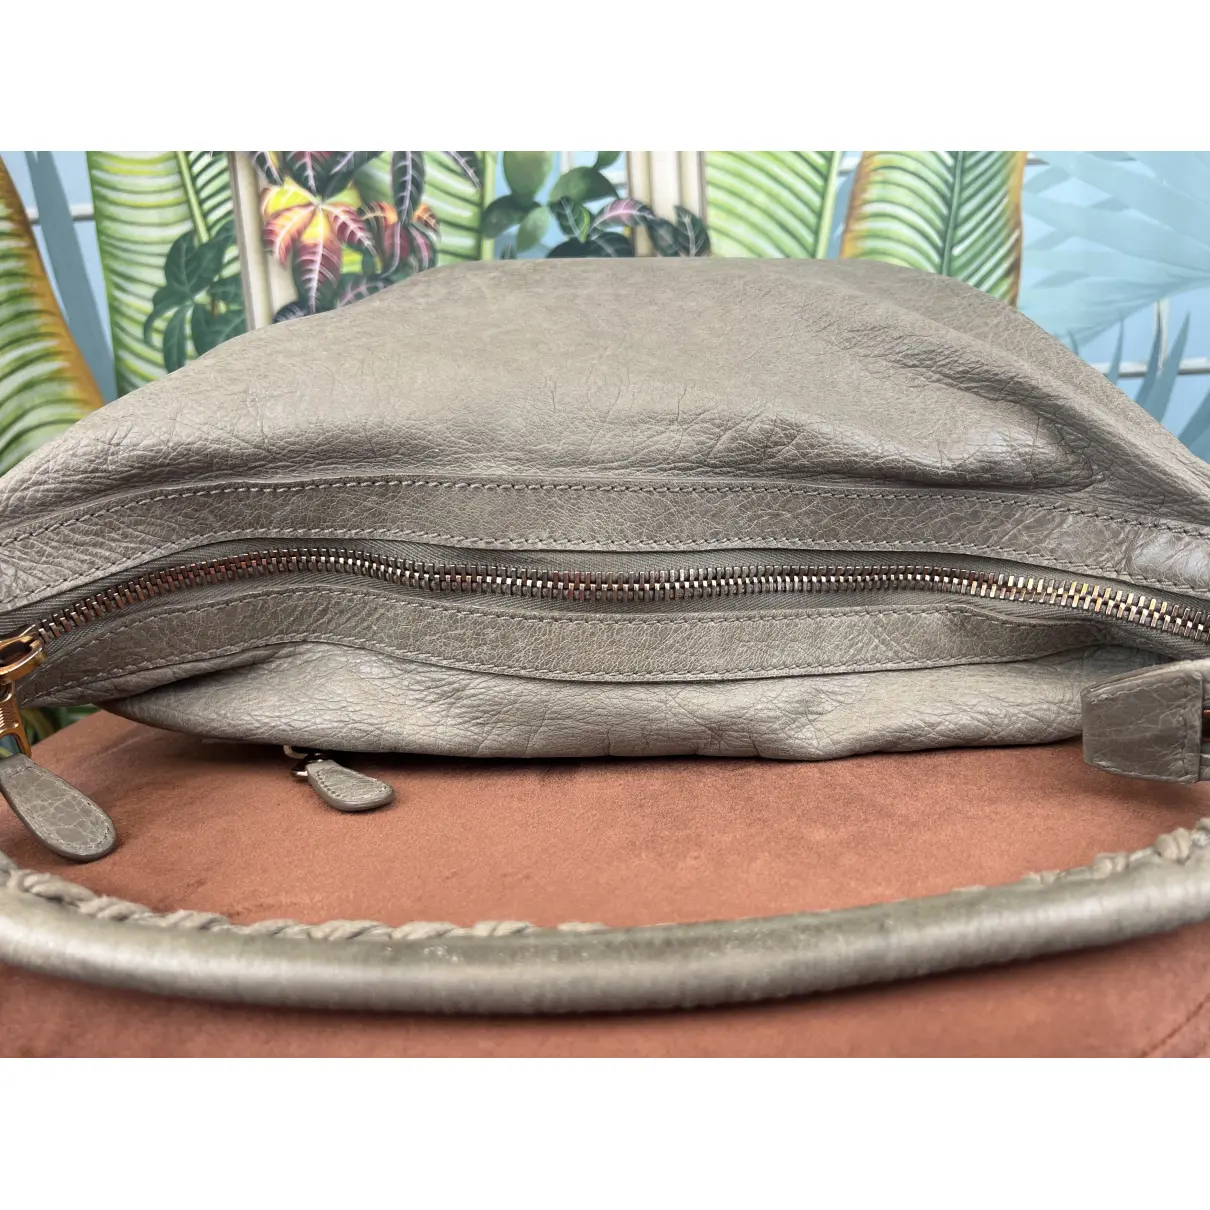 Courier XL leather handbag Balenciaga